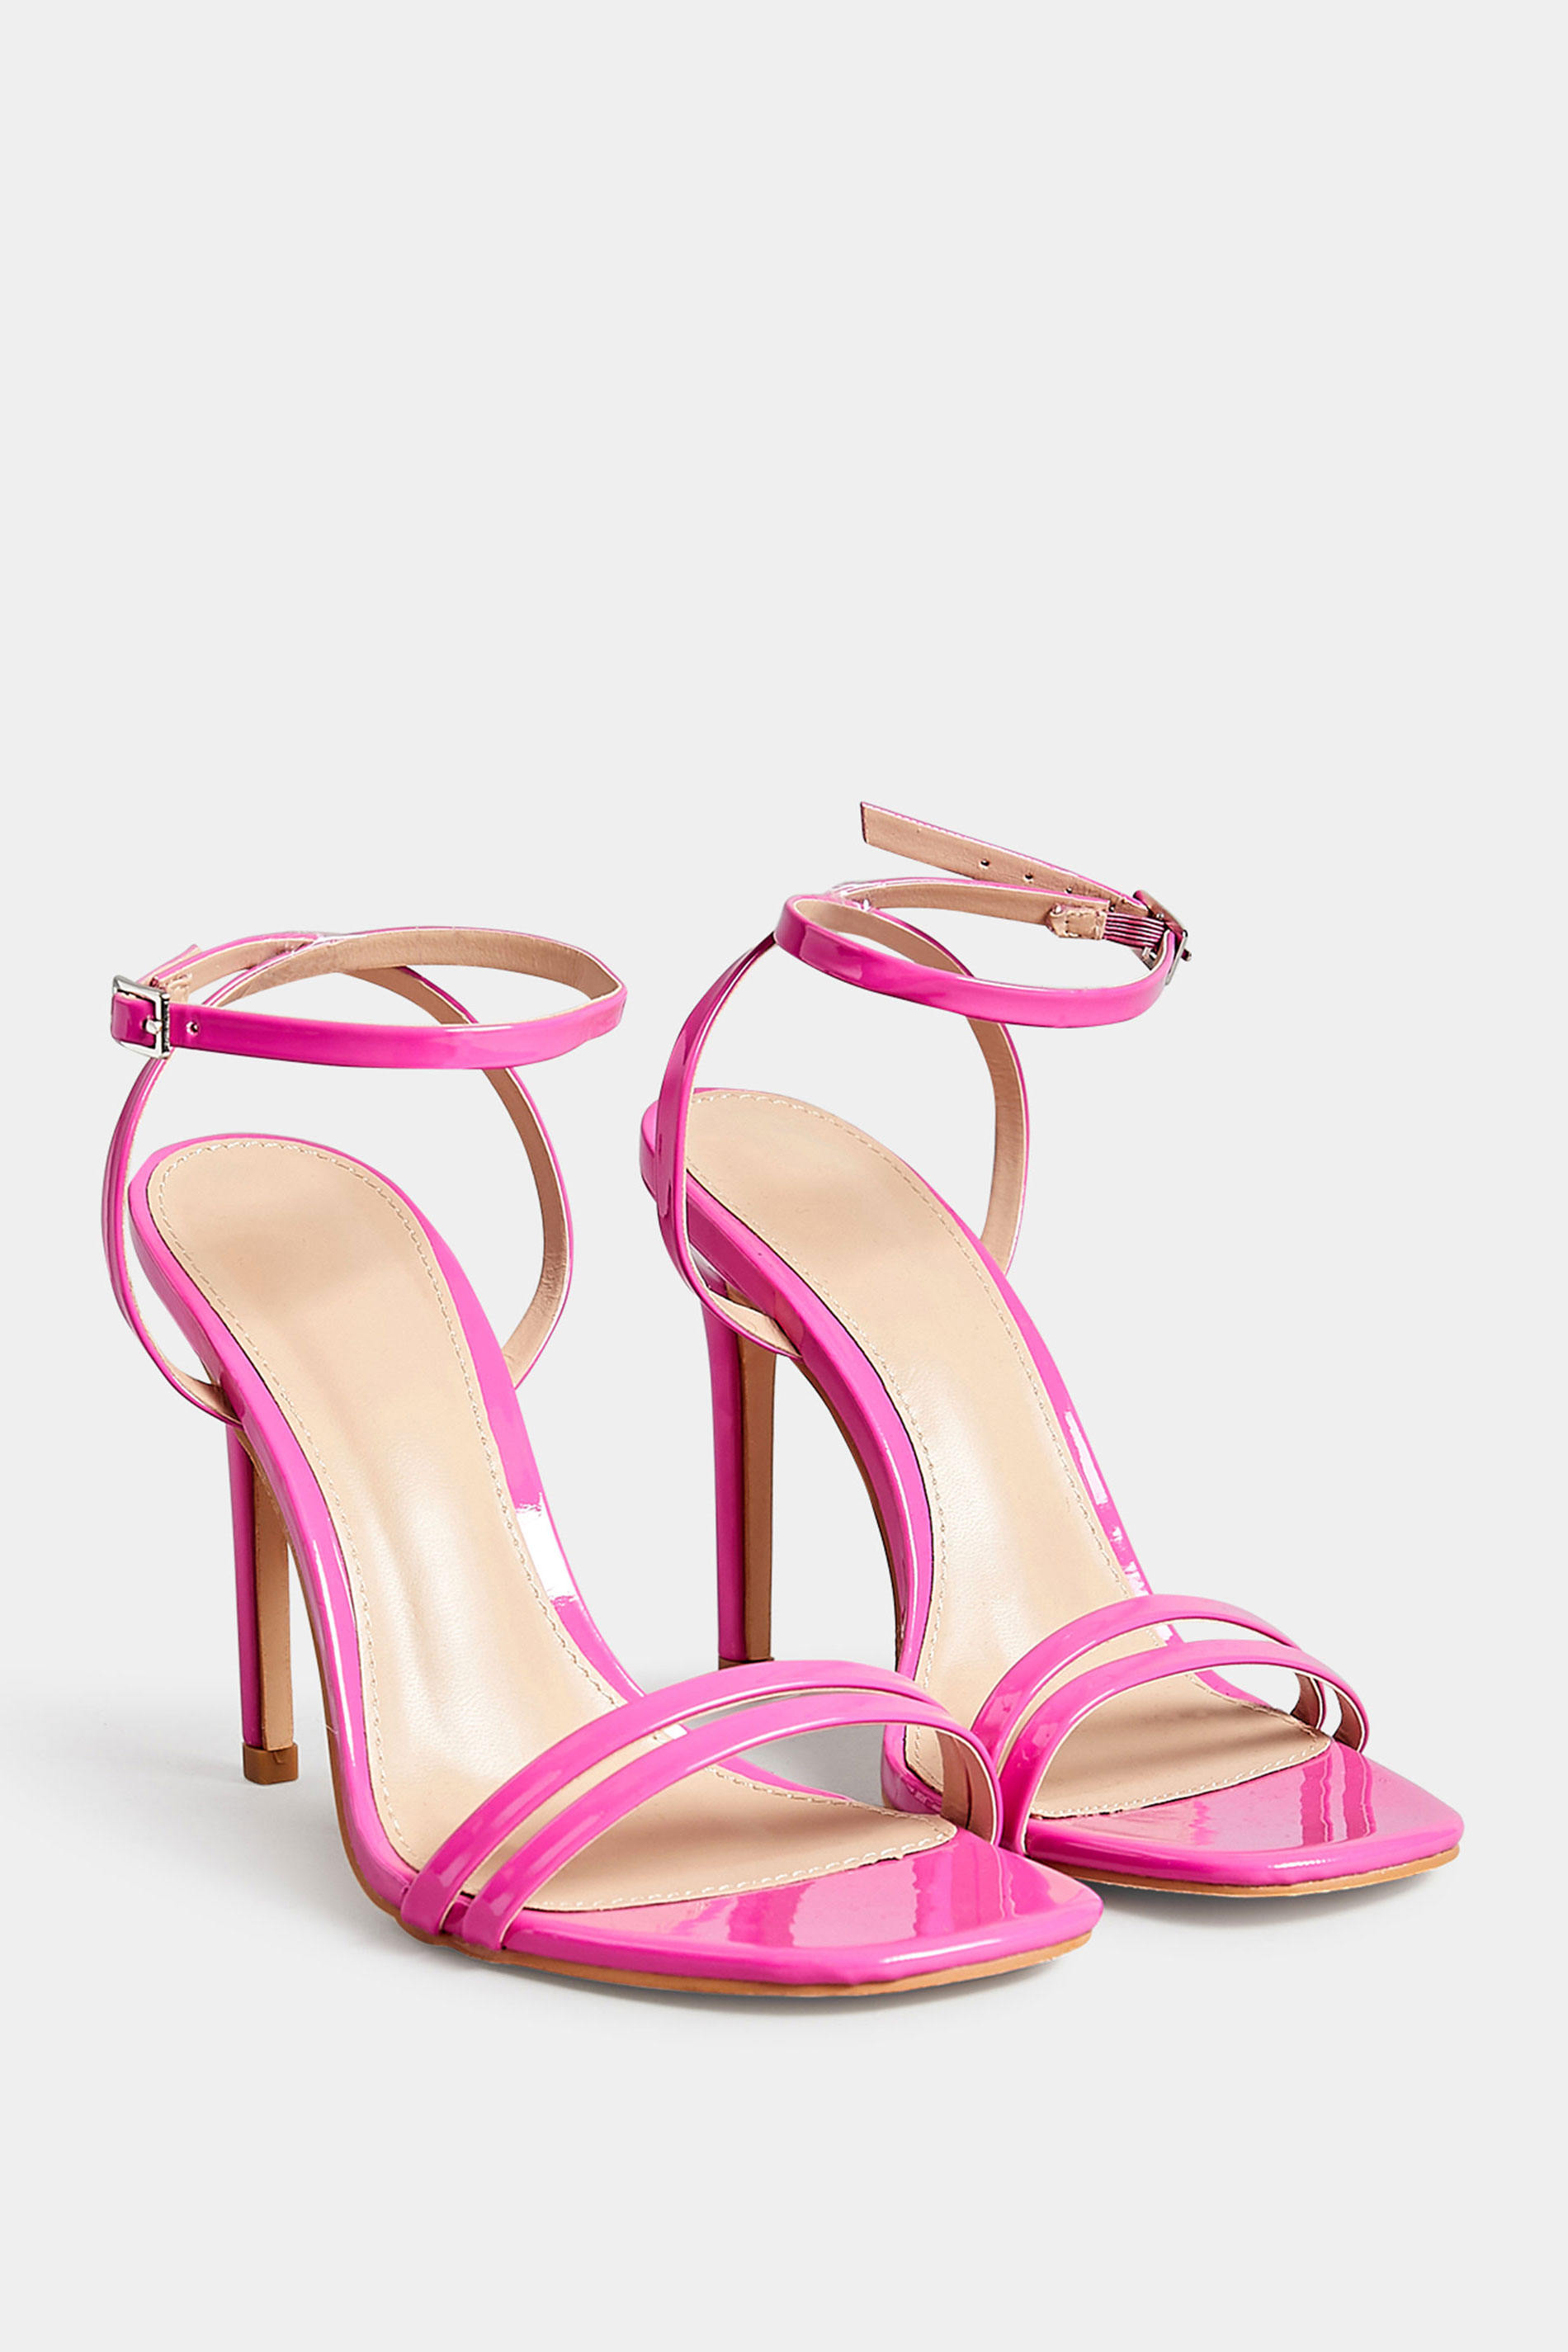 PixieGirl Pink Double Band Heels In Standard Fit | PixieGirl 2